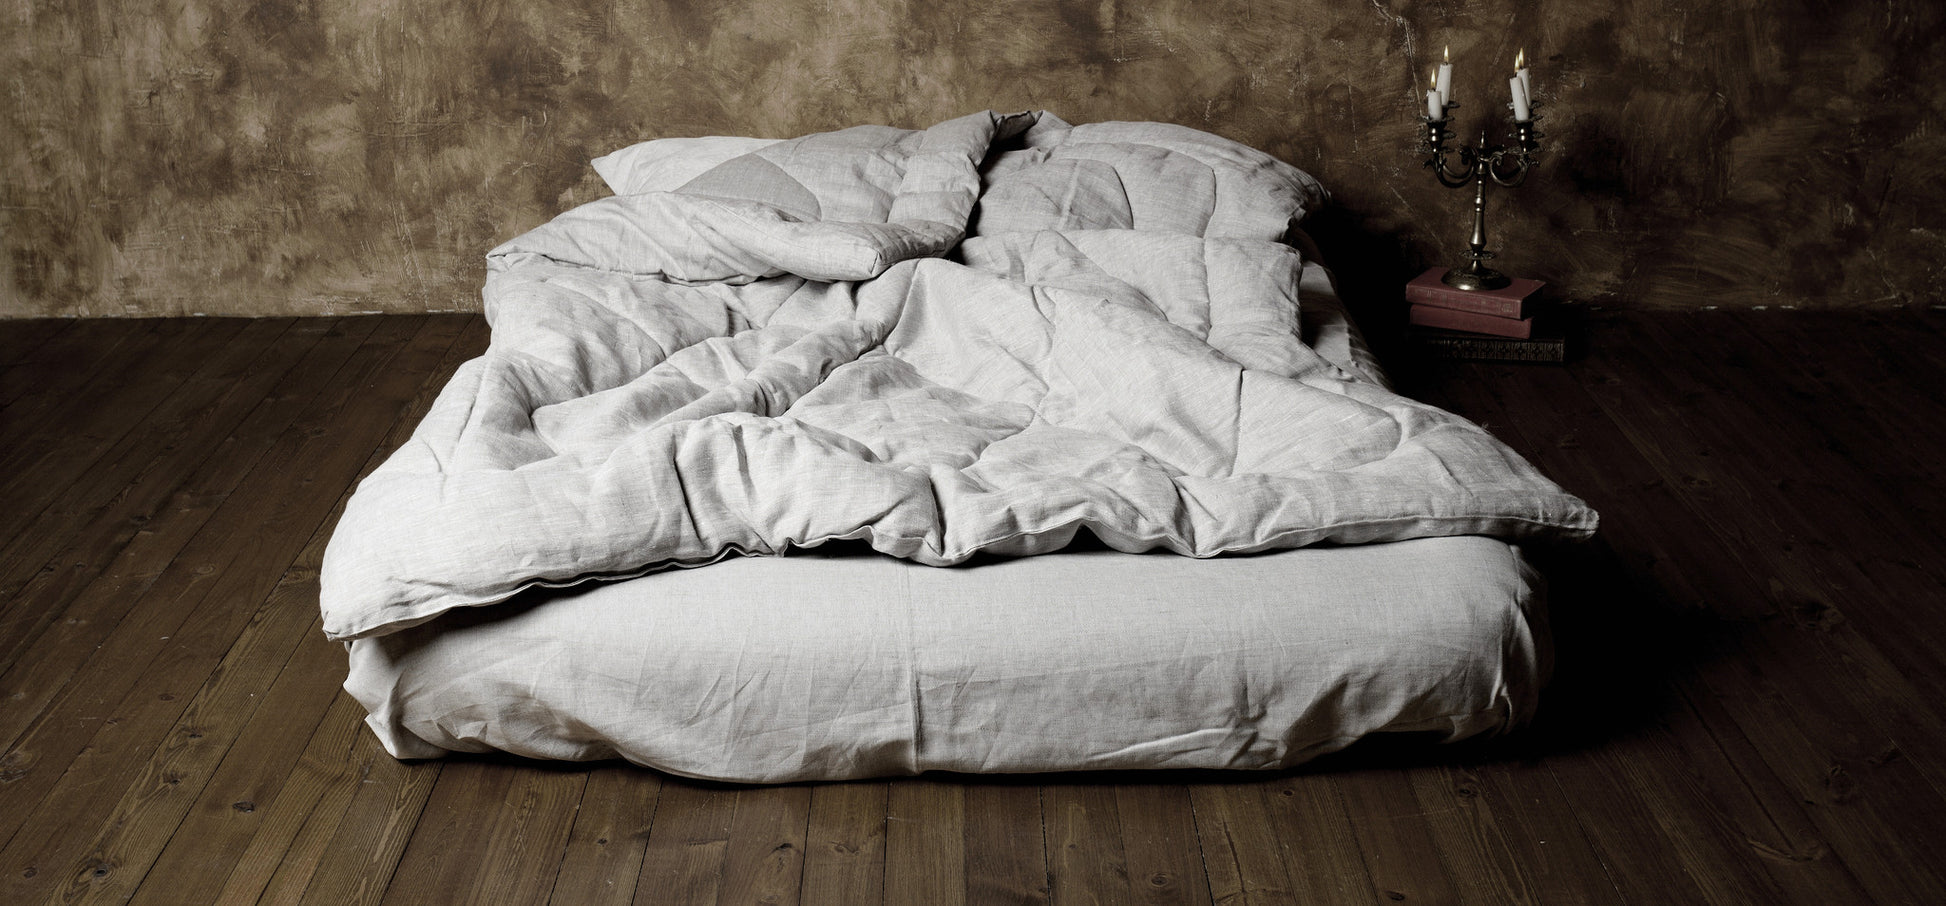 affordable organic bedding using DIY natural materials